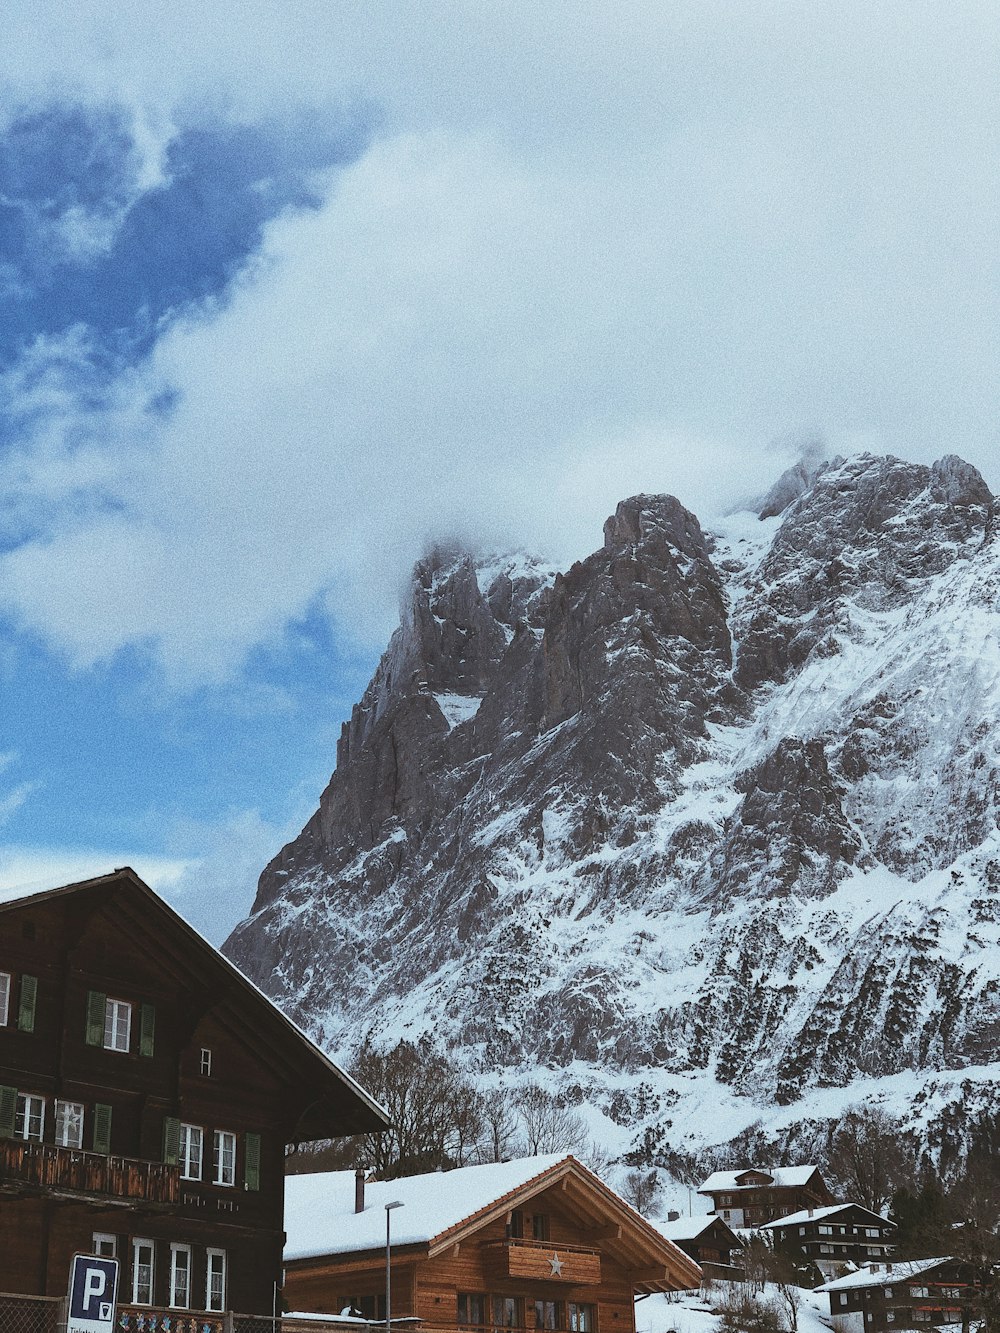 Maisons et sommet de montagne recouverts de neige sous un ciel blanc et bleu